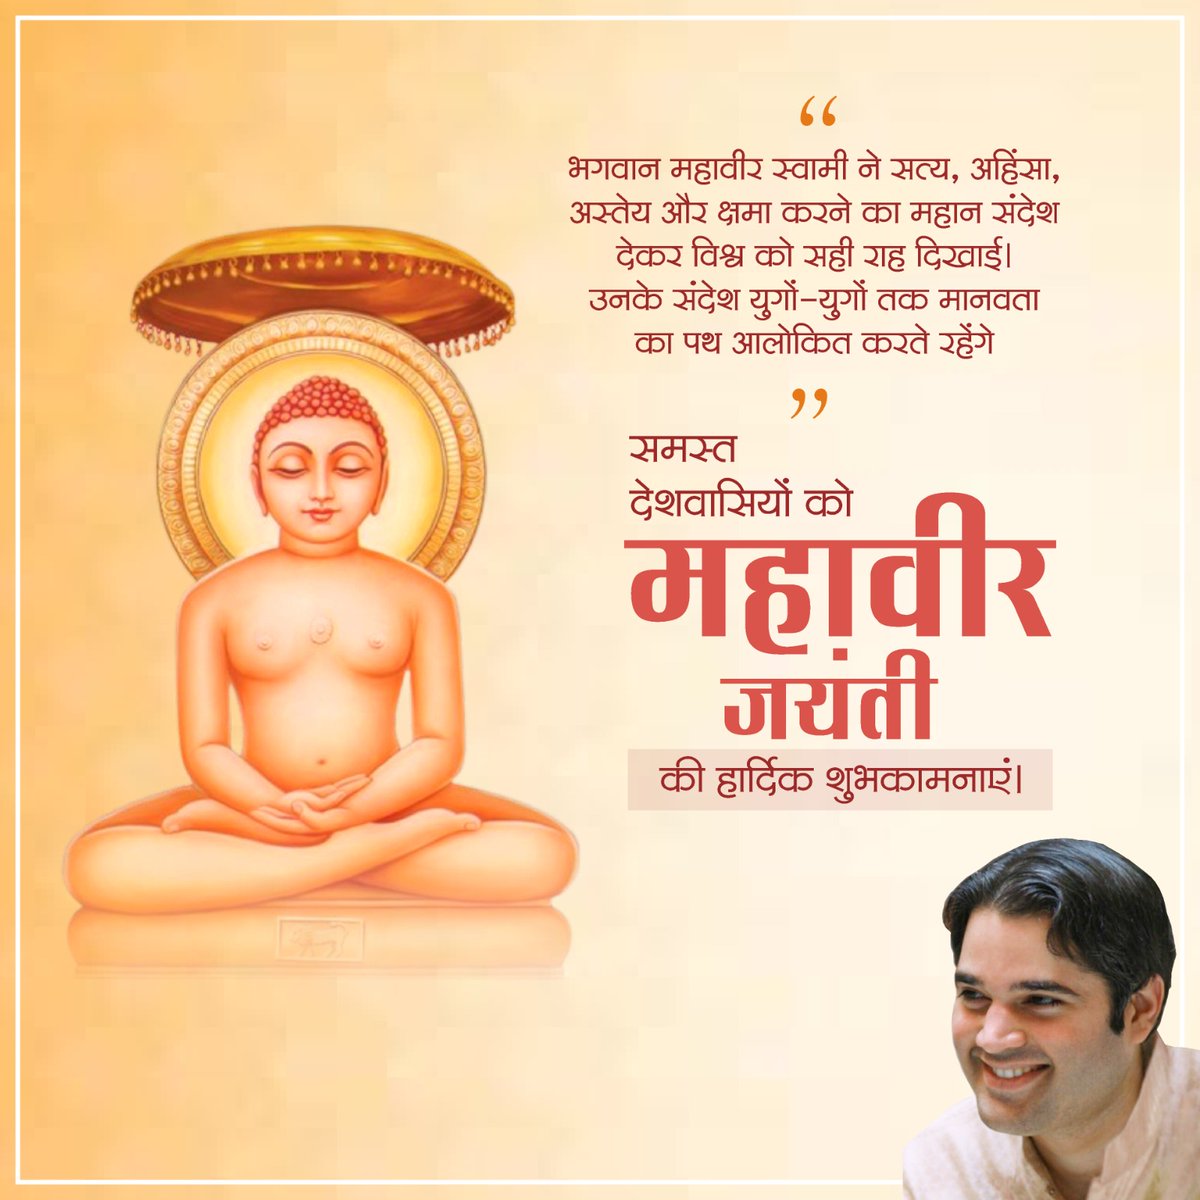 आप सभी को भगवान महावीर जयंती की हार्दिक शुभकामनाएं।
@varungandhi80
#pilibhit
#महावीर_जयंती
 #MahaveerJayanti